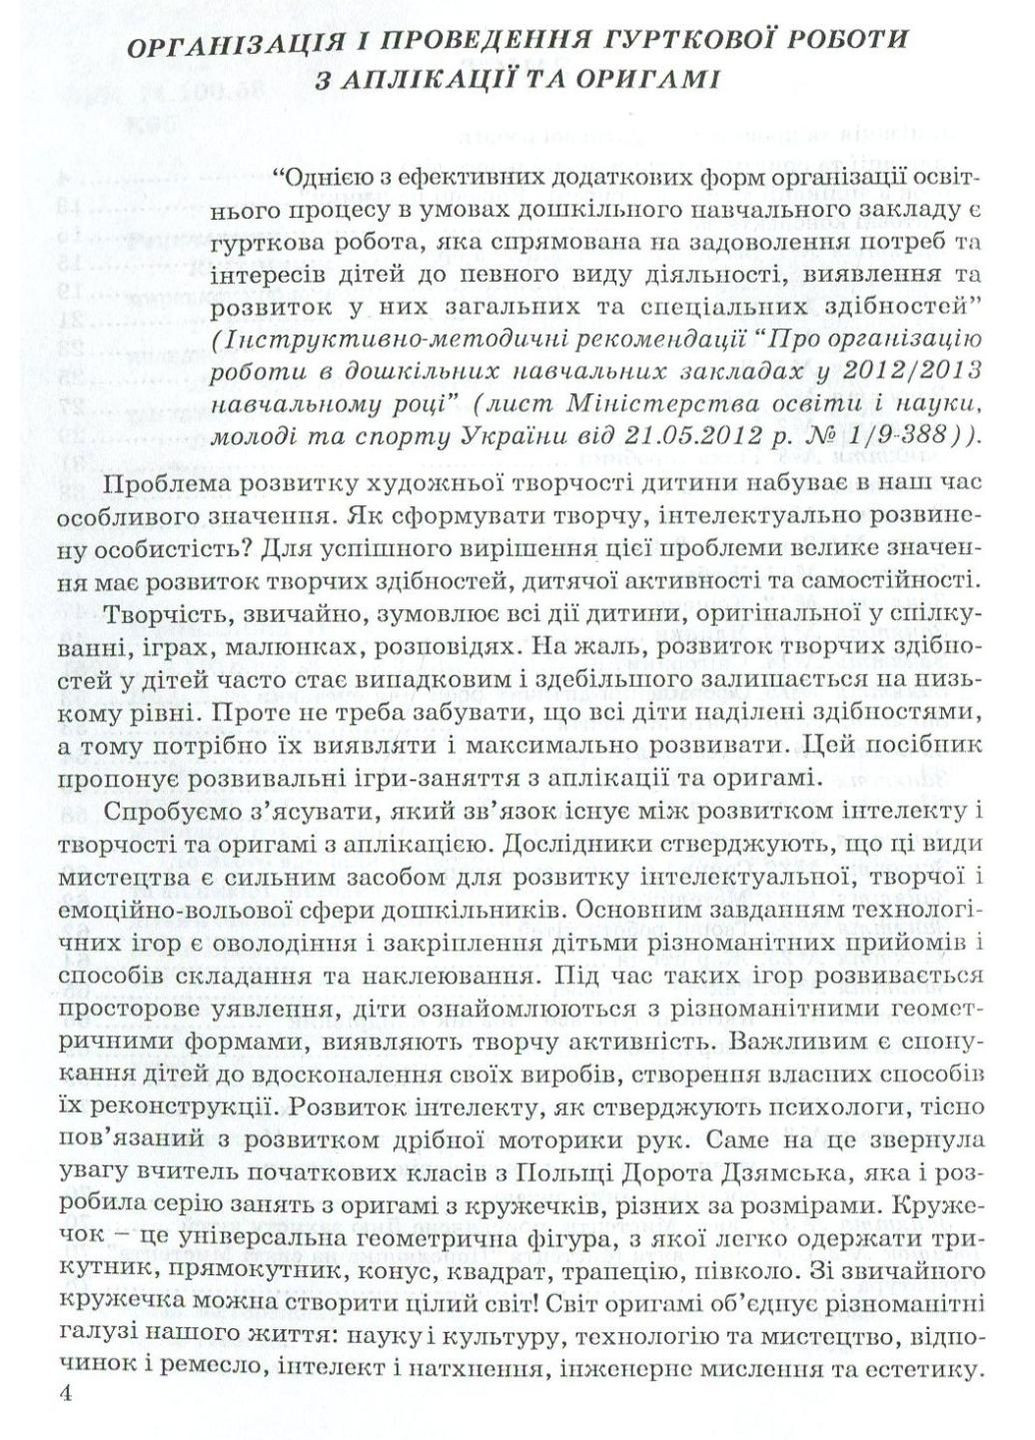 Гурткова робота з аплікації та оригамі. Коппалова Н., 978-966-634-274-7 Мандрівець (280925475)